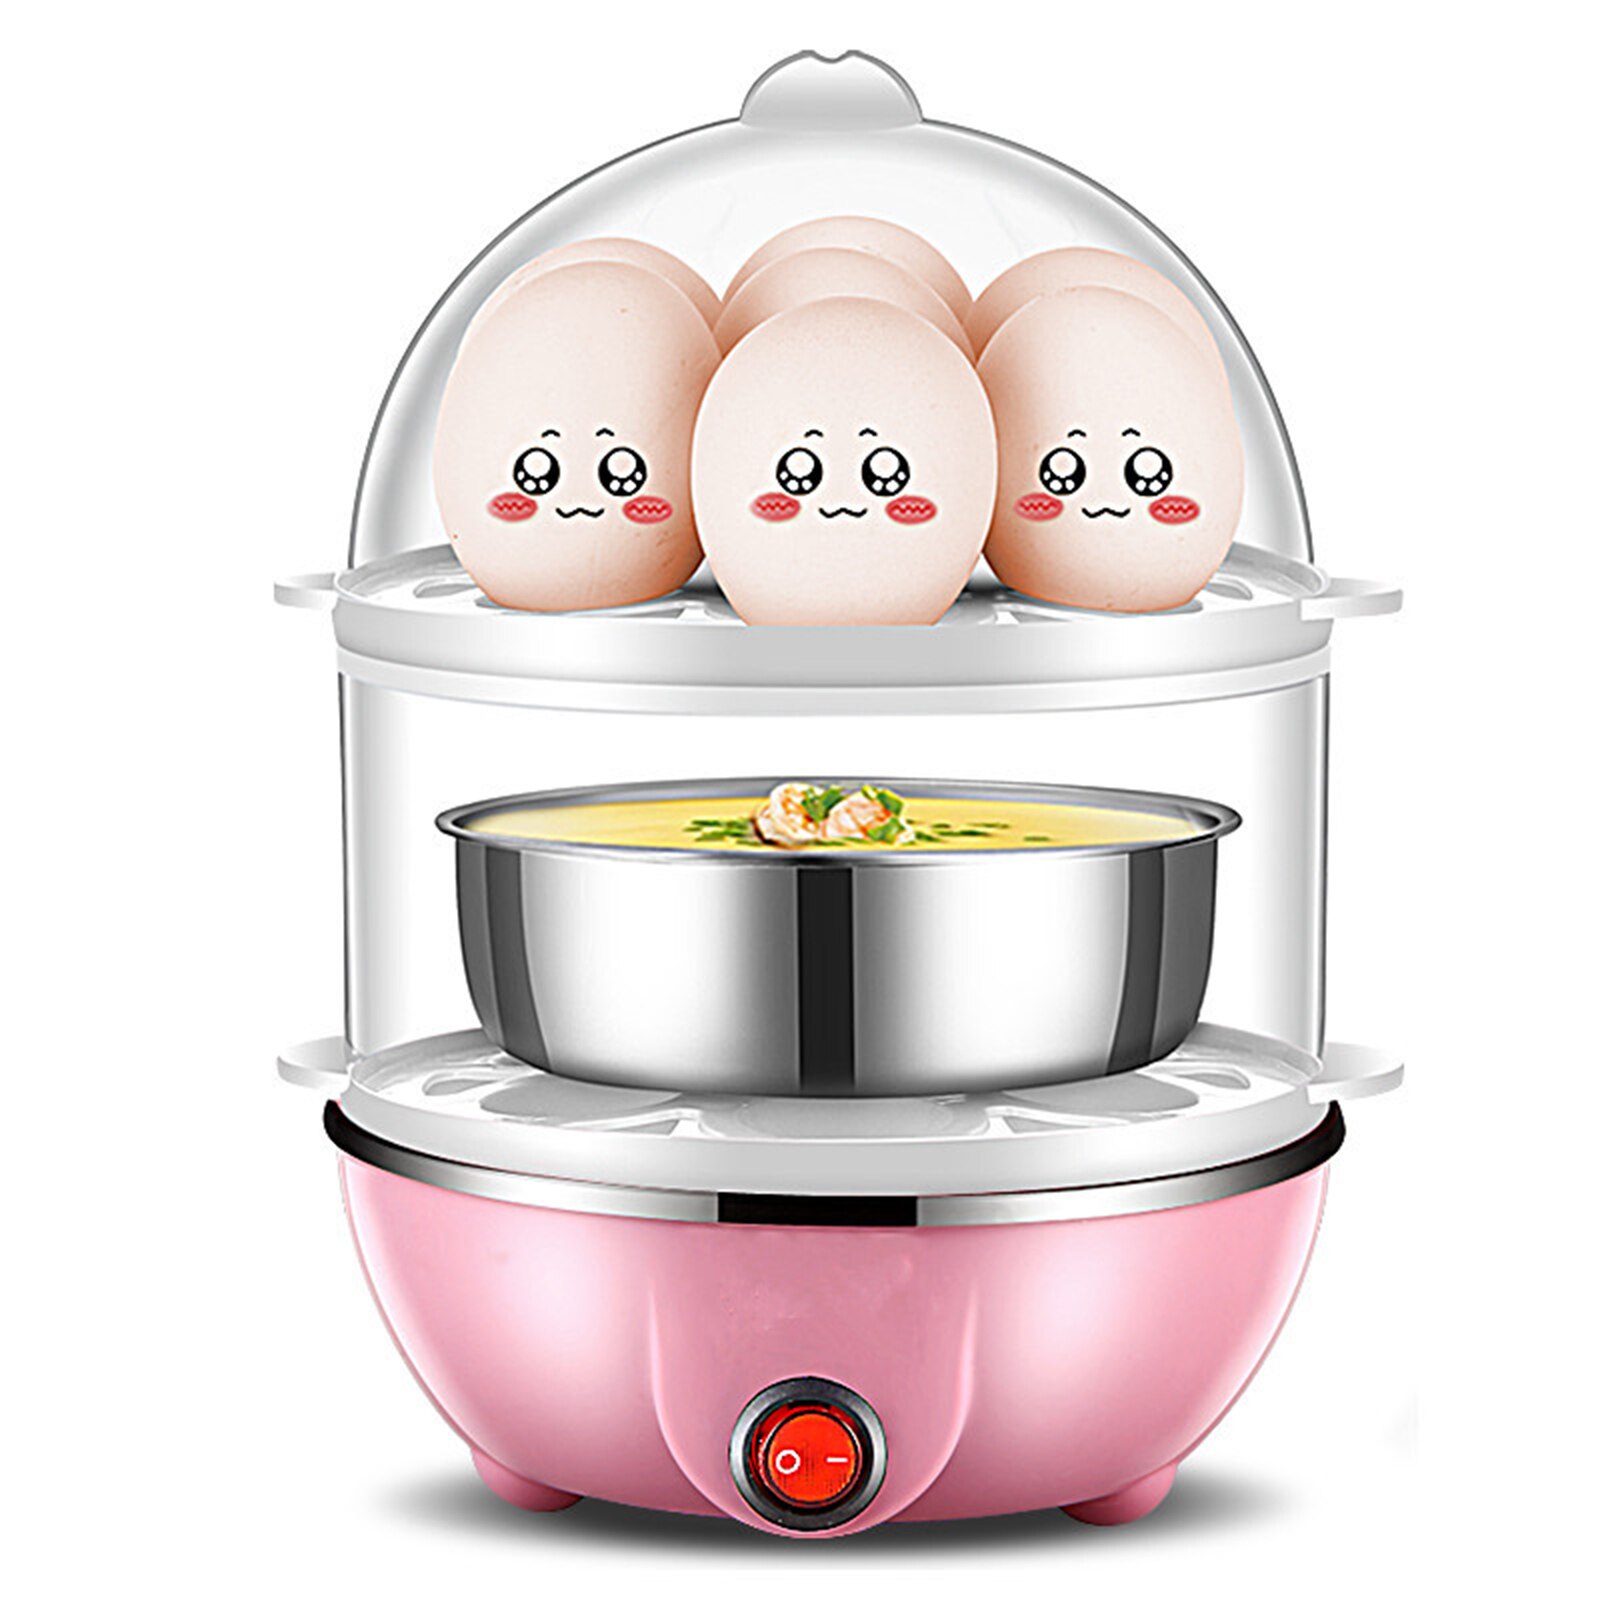 Multifunktionelt elektrisk æg kogekoger dampkogeplader køkken køkkenredskaber køkken tilbehør æg komfur køkkenredskaber: Lyserød